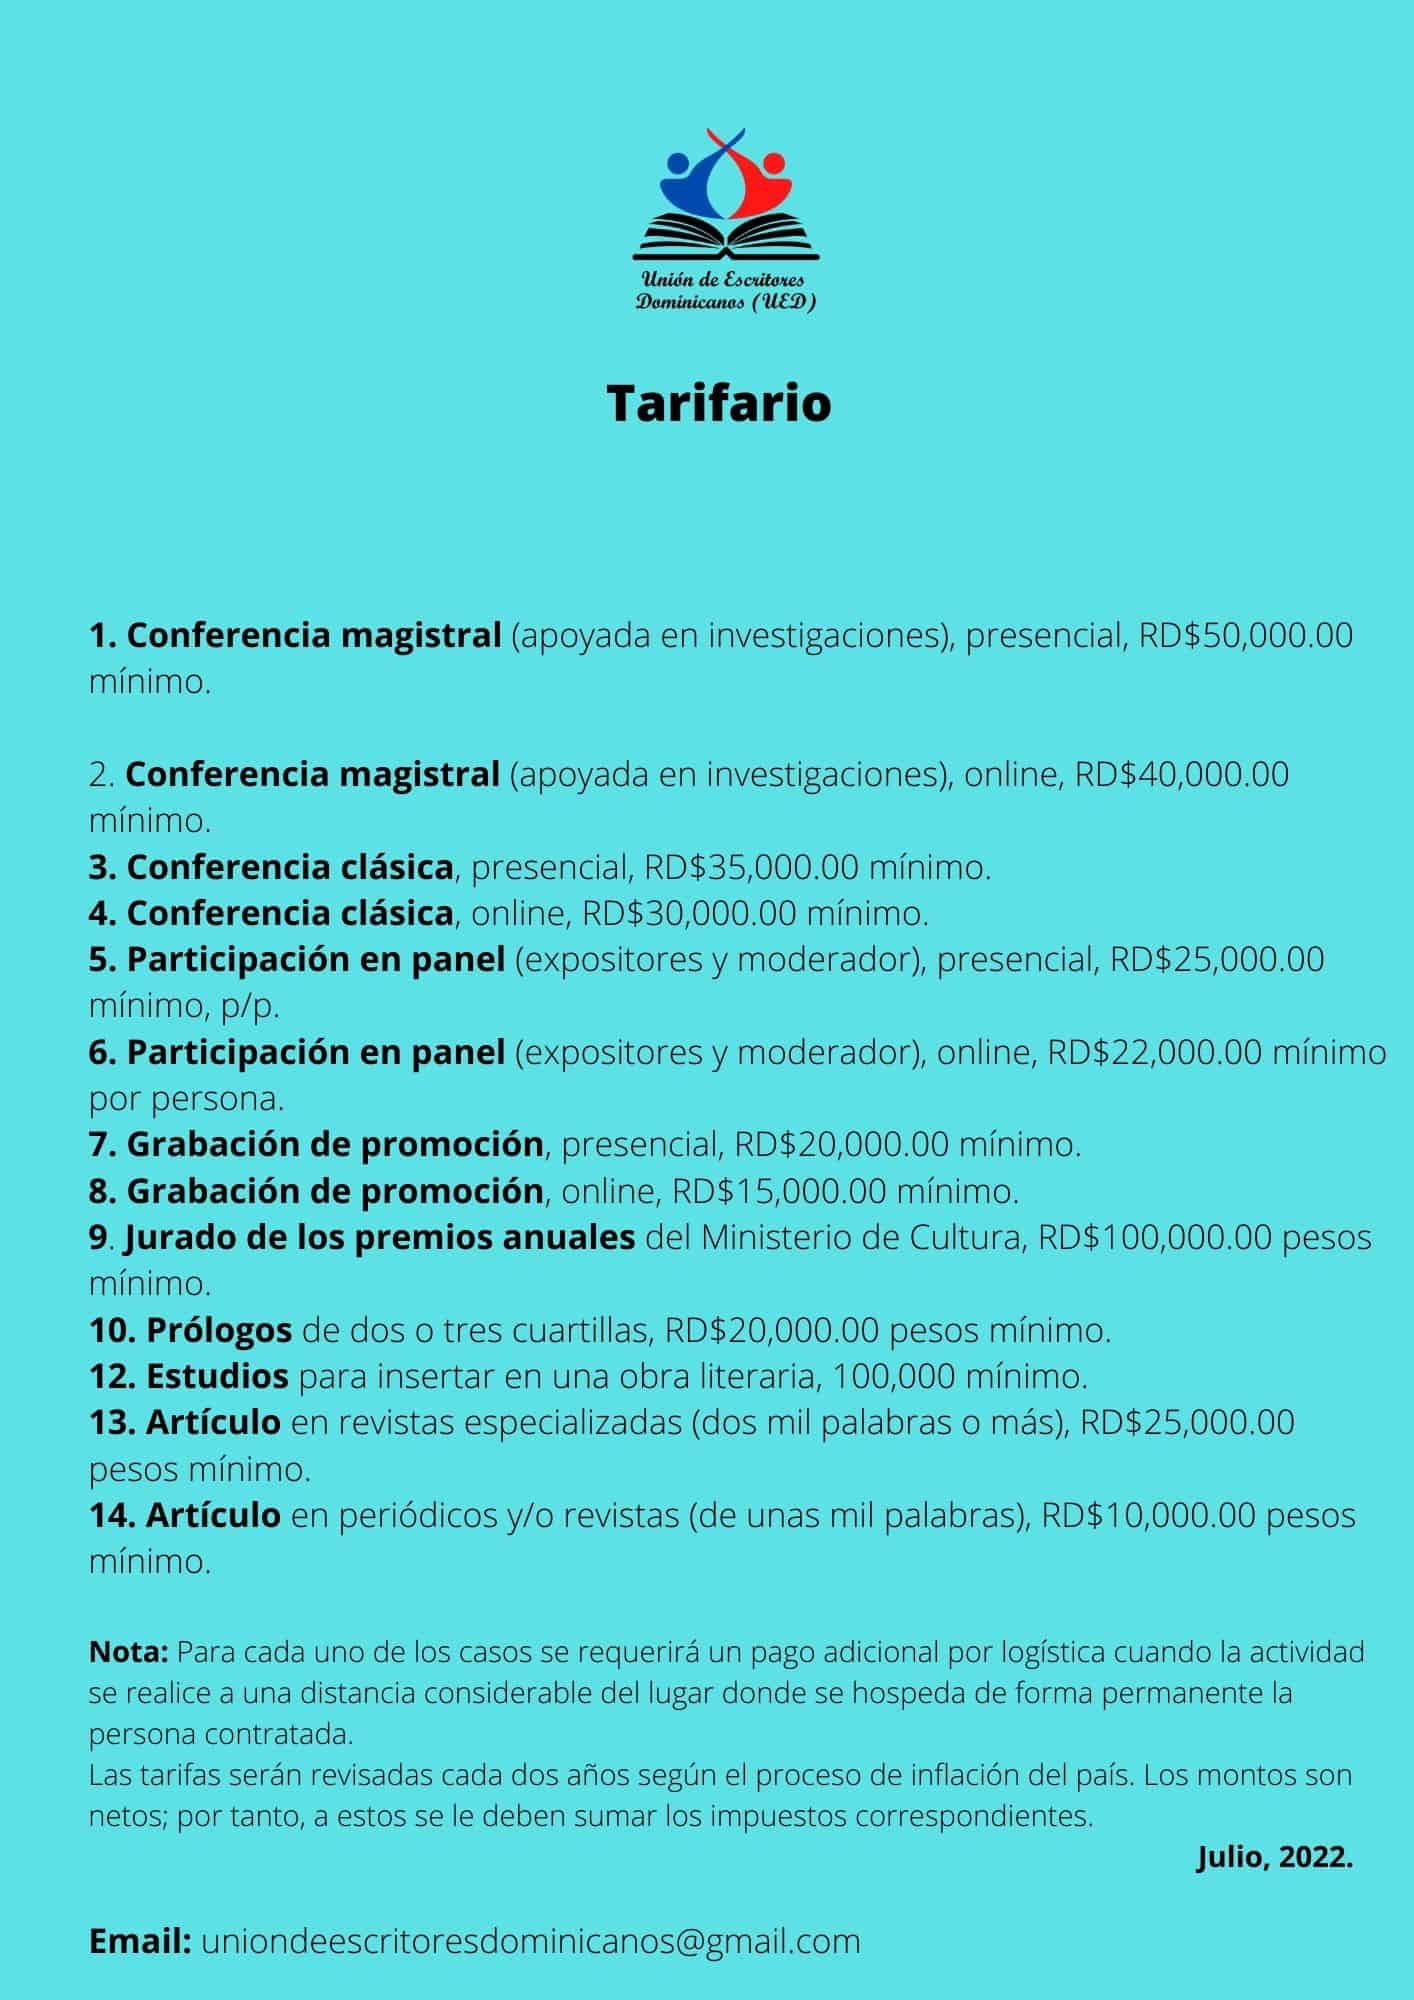 tabla-tarifario-de-la-ued-2022-969fdbc8.jpg